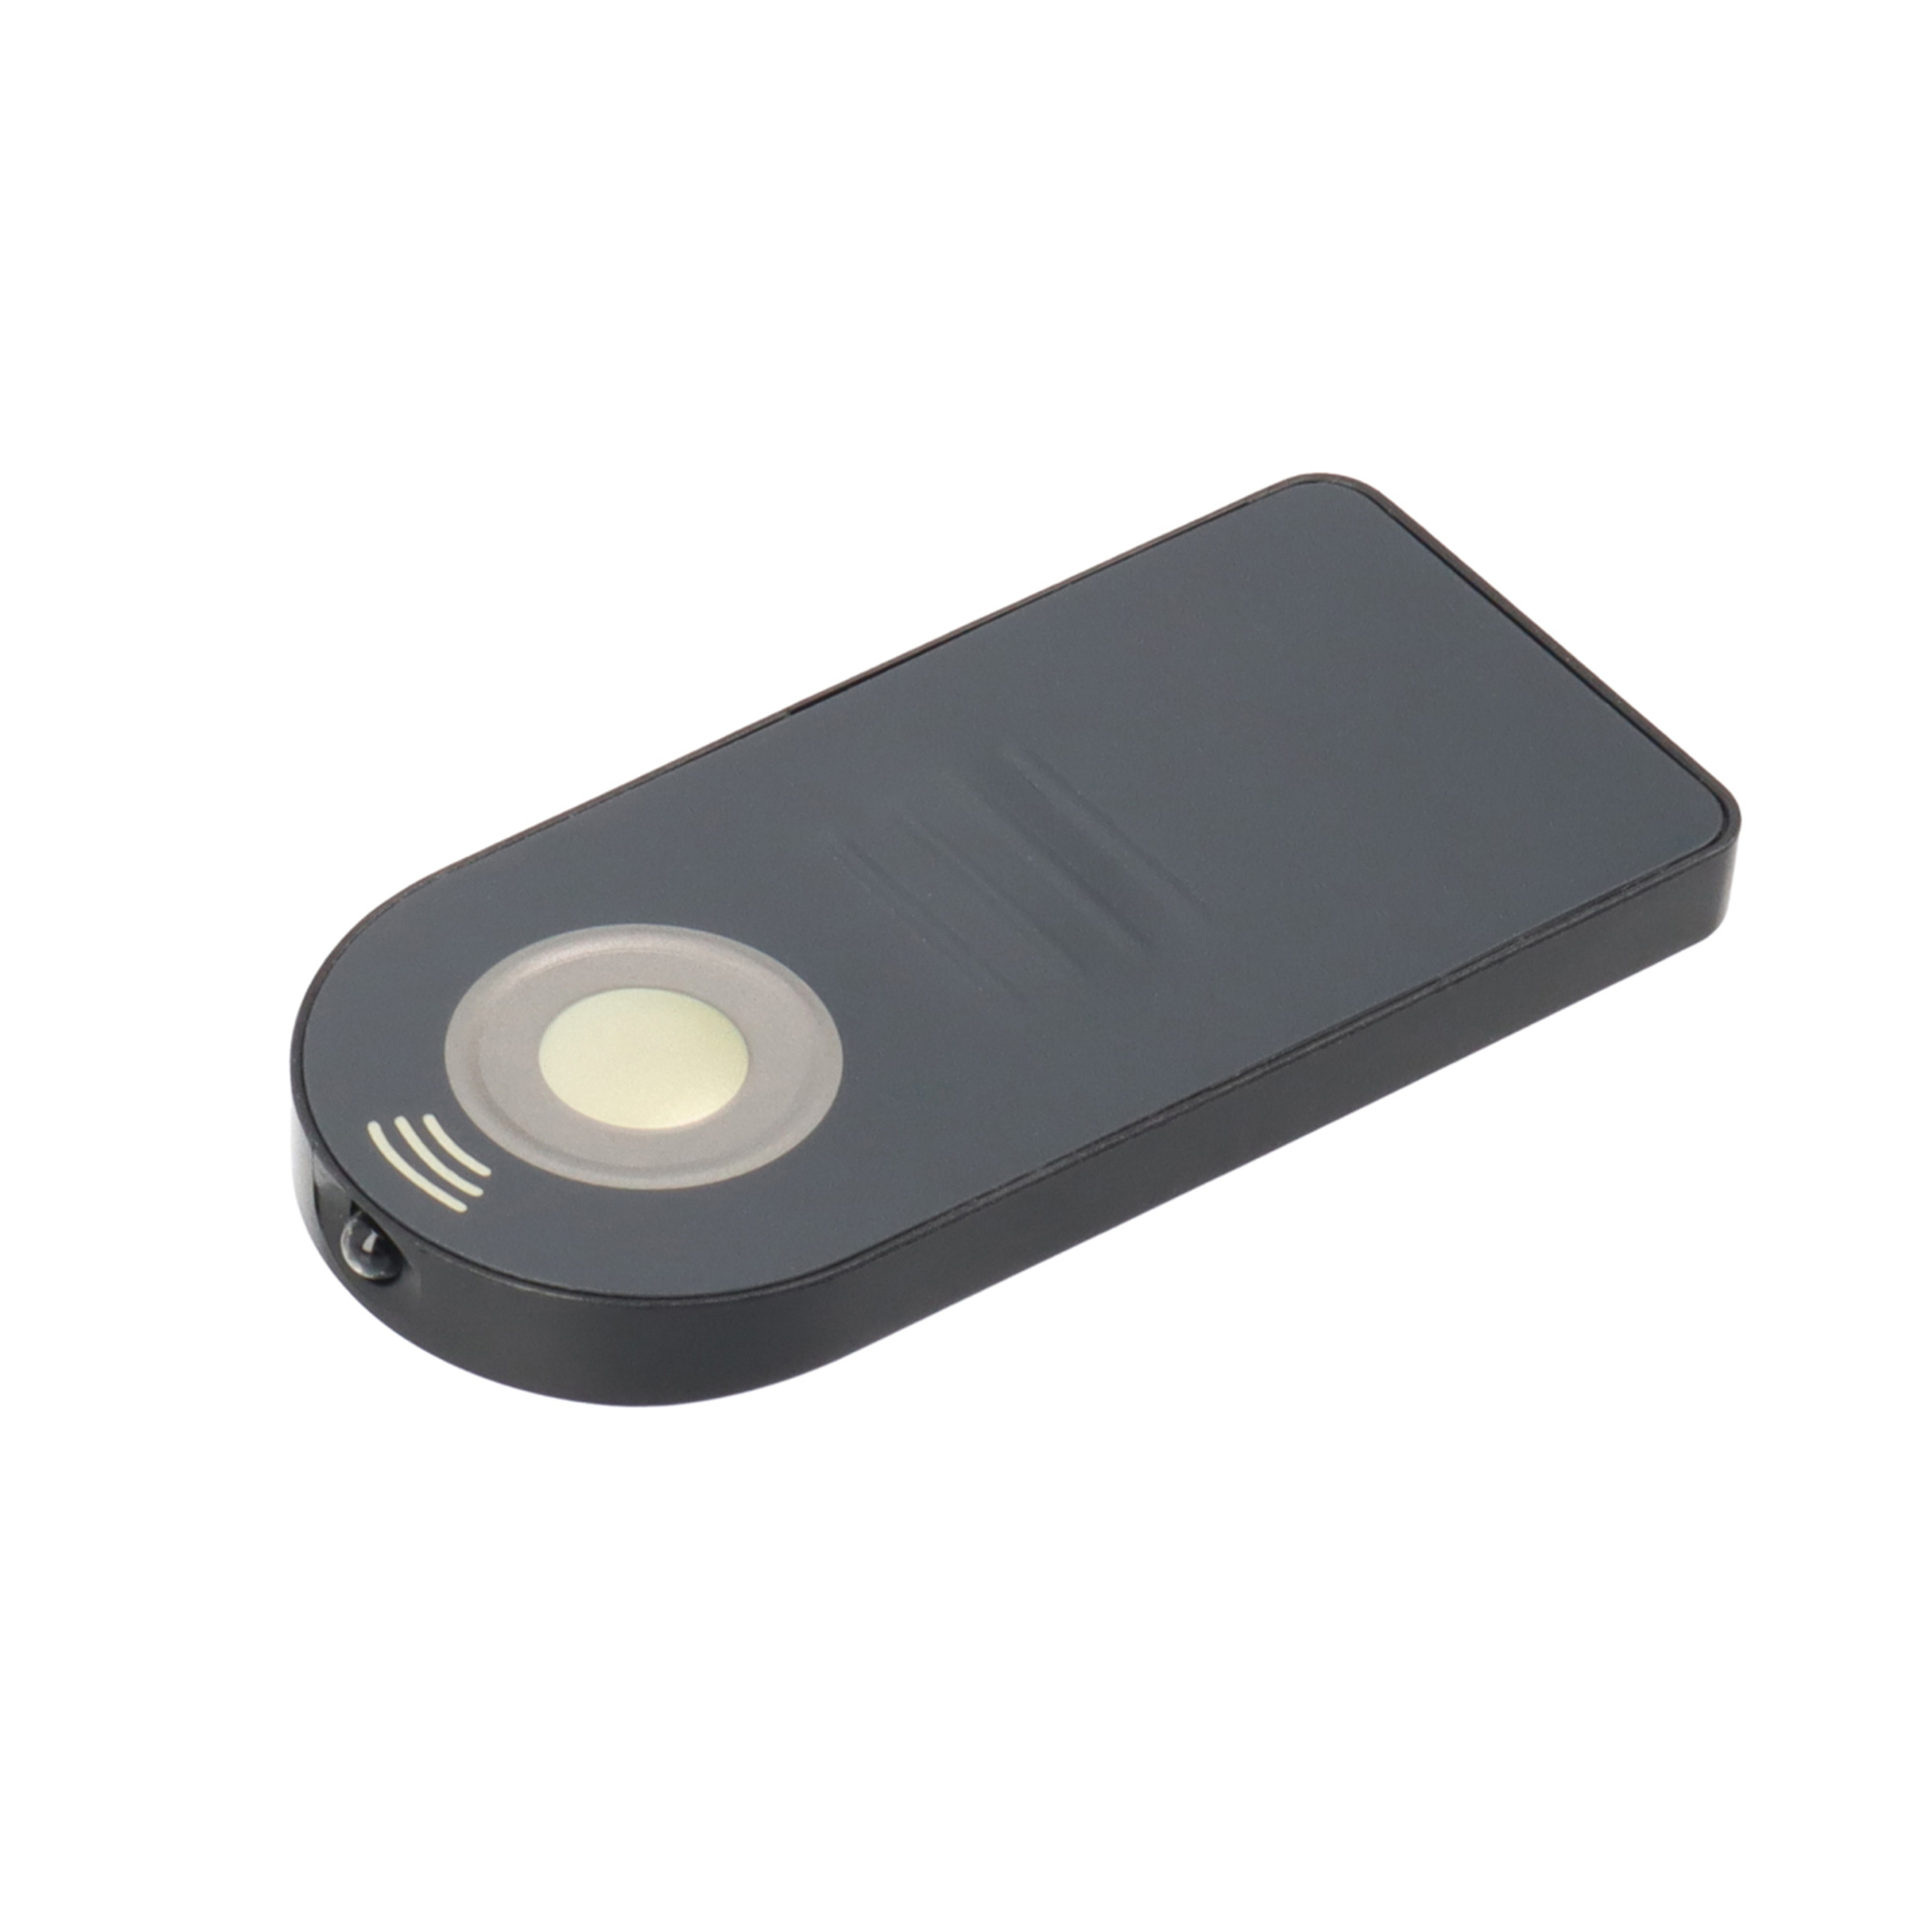 AYEX Infrarot Fernauslöser Mini IR Black für Nikon Fernbedienung Infrarot Kameras, Fernauslöser